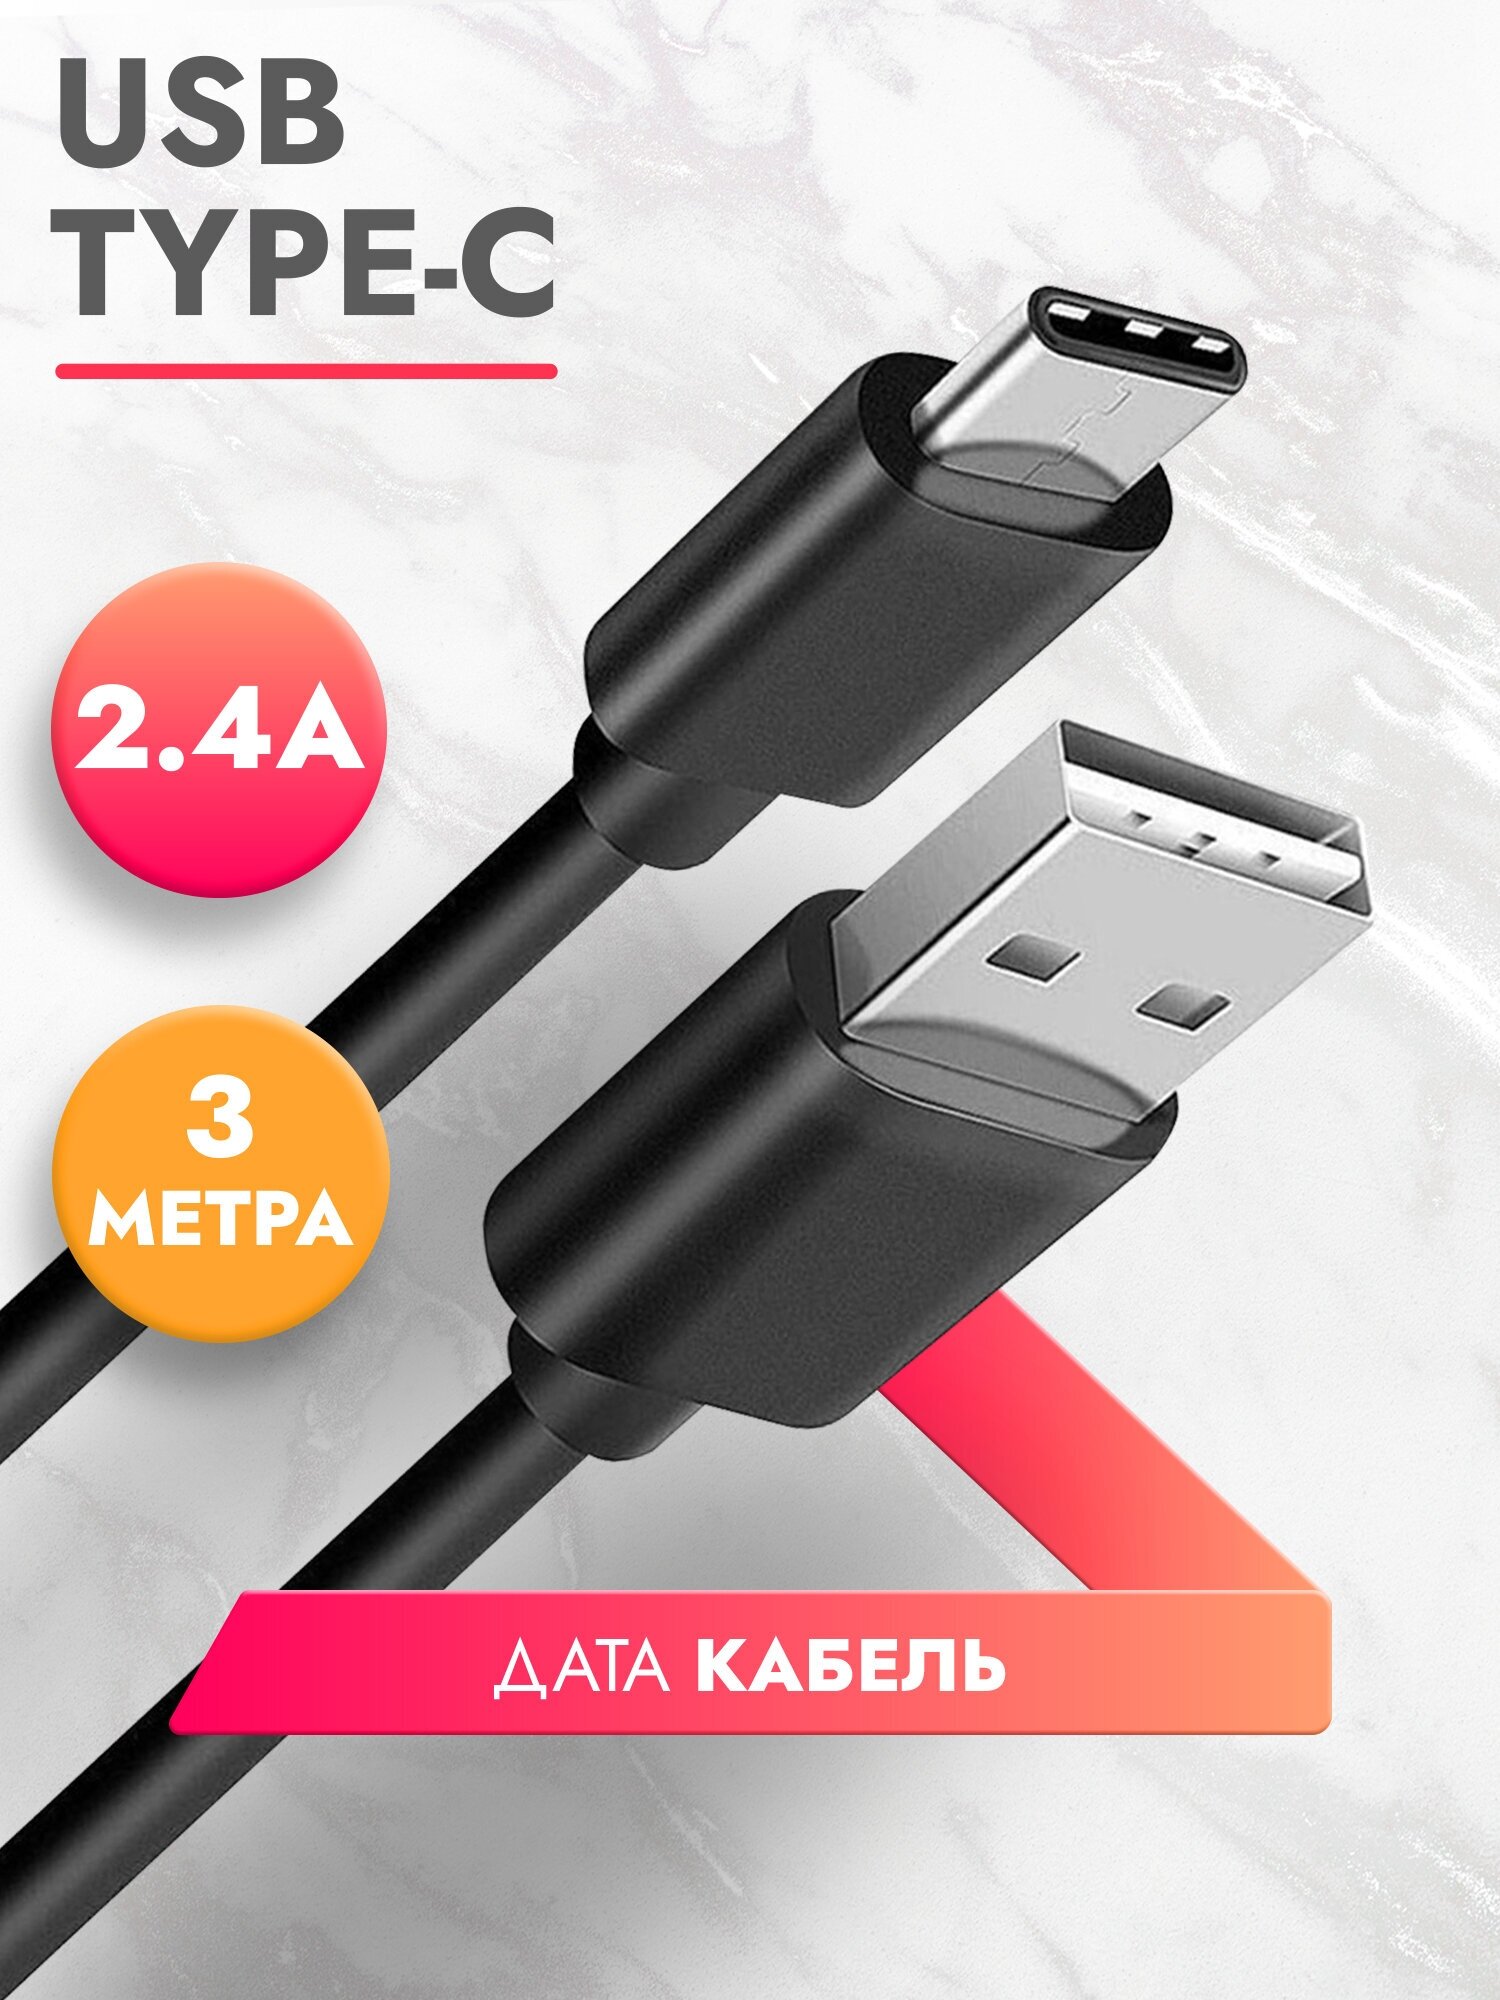 Дата Кабель USB Type C (3 м) 2.4A провод для зарядки телефона, смартфона, планшета шнур тайп си для Samsung, Galaxy, Honor, Huawei, Xiaomi черный, Brozo